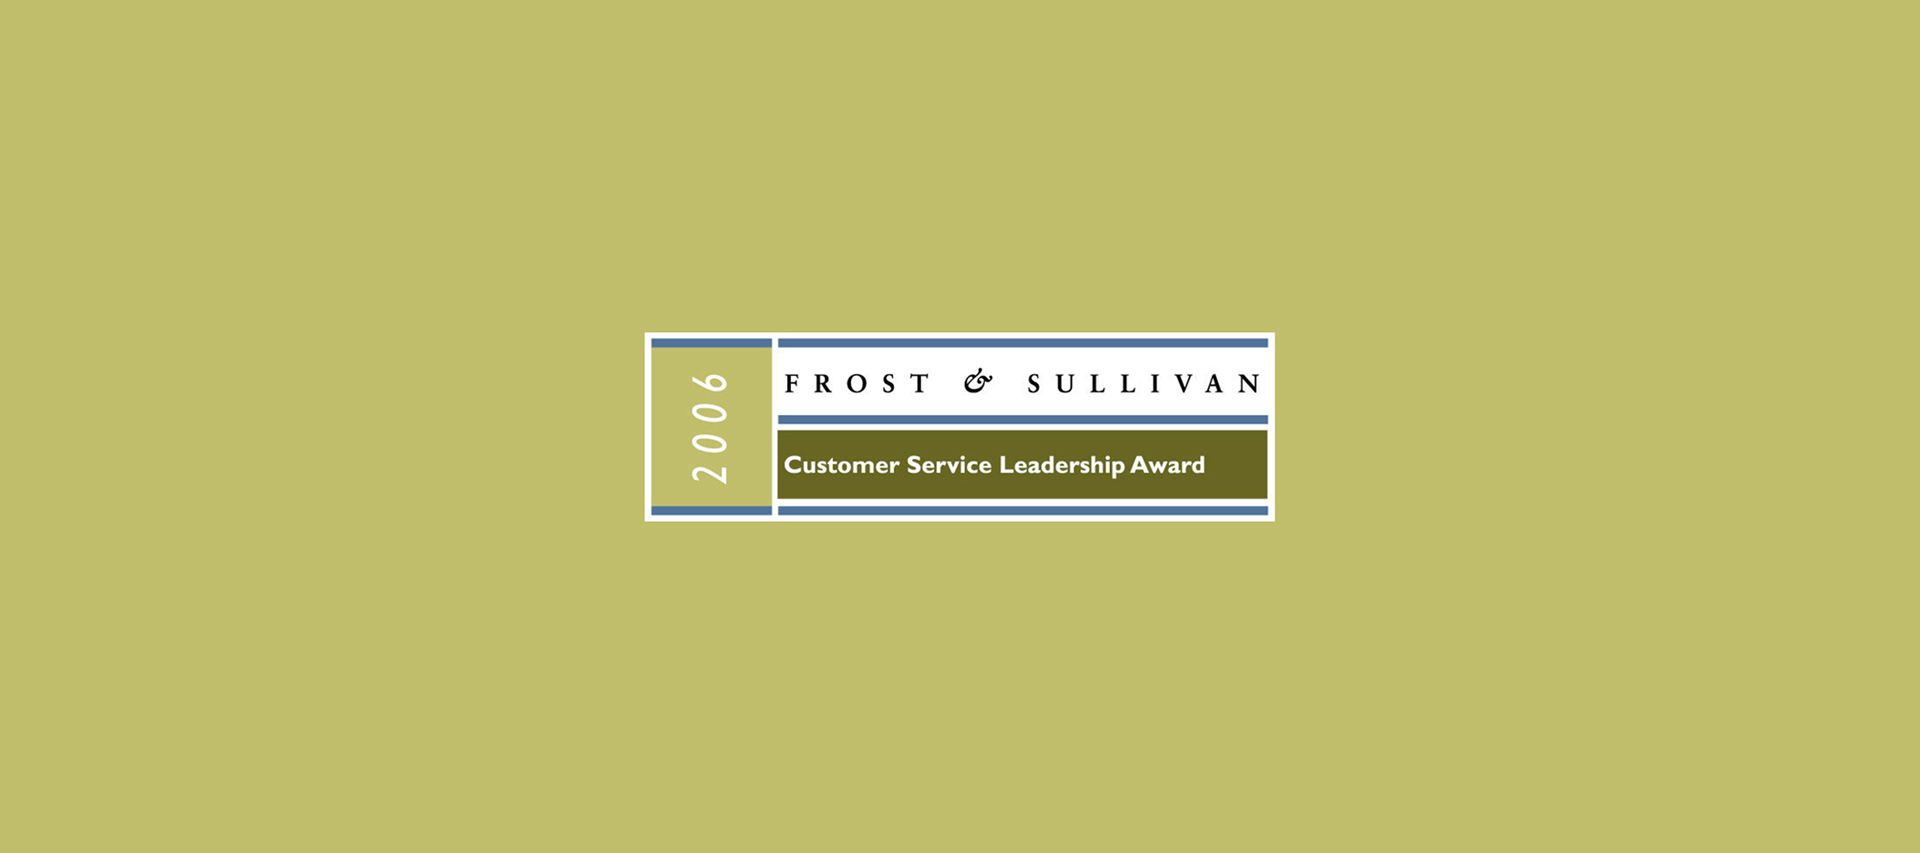 Frost & Sullivan Award 2006